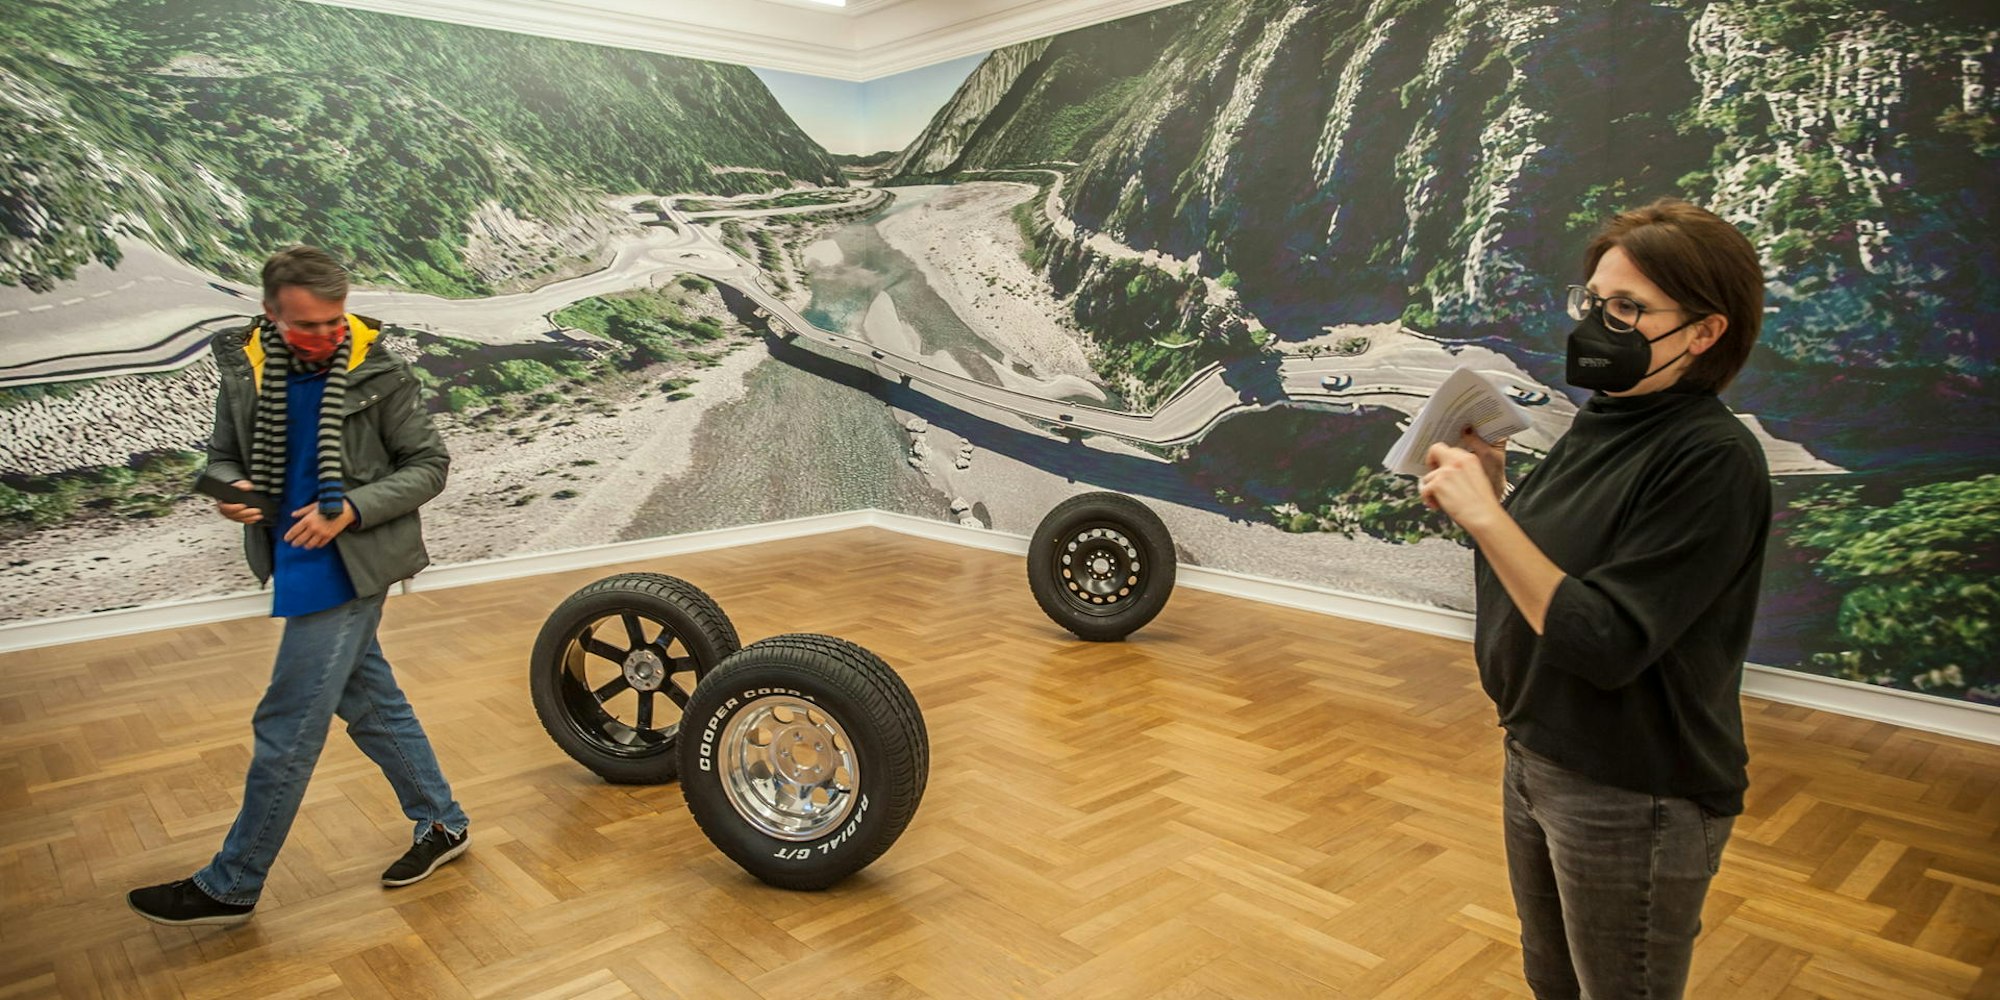 Ob Riesenstelze oder Datenautobahn: In der neuen Ausstellung im Museum Morsbroich dreht sich alles um Verkehr – und ist aktueller denn je.